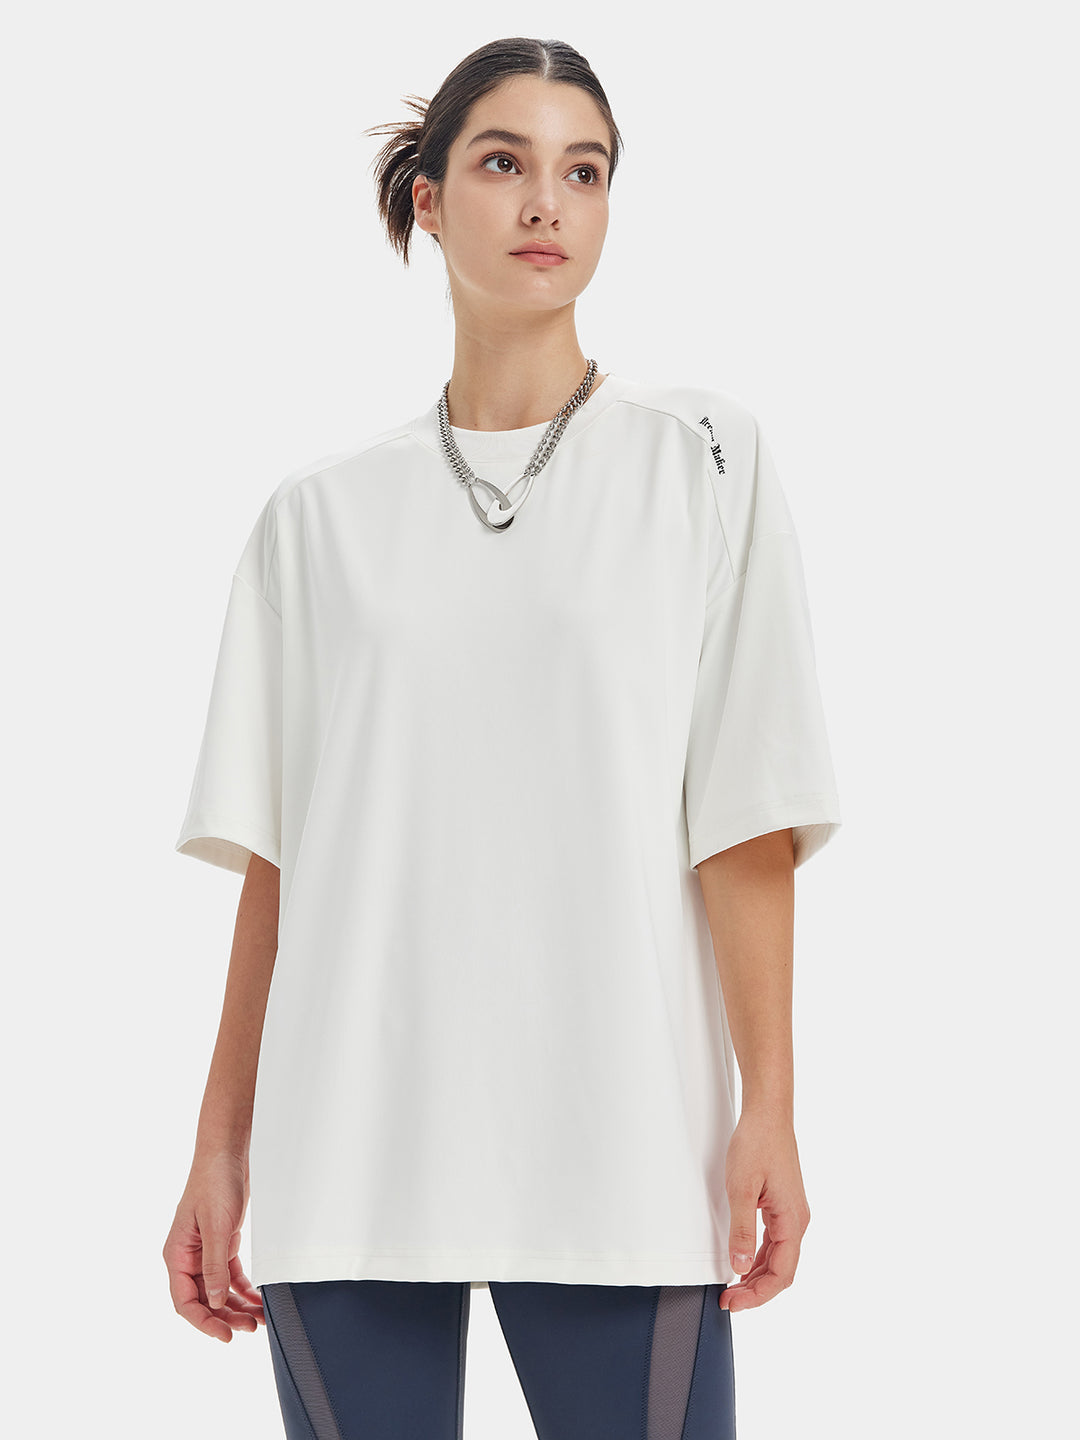 Unisex Patchwork Tops Drop Shoulder T Shirts